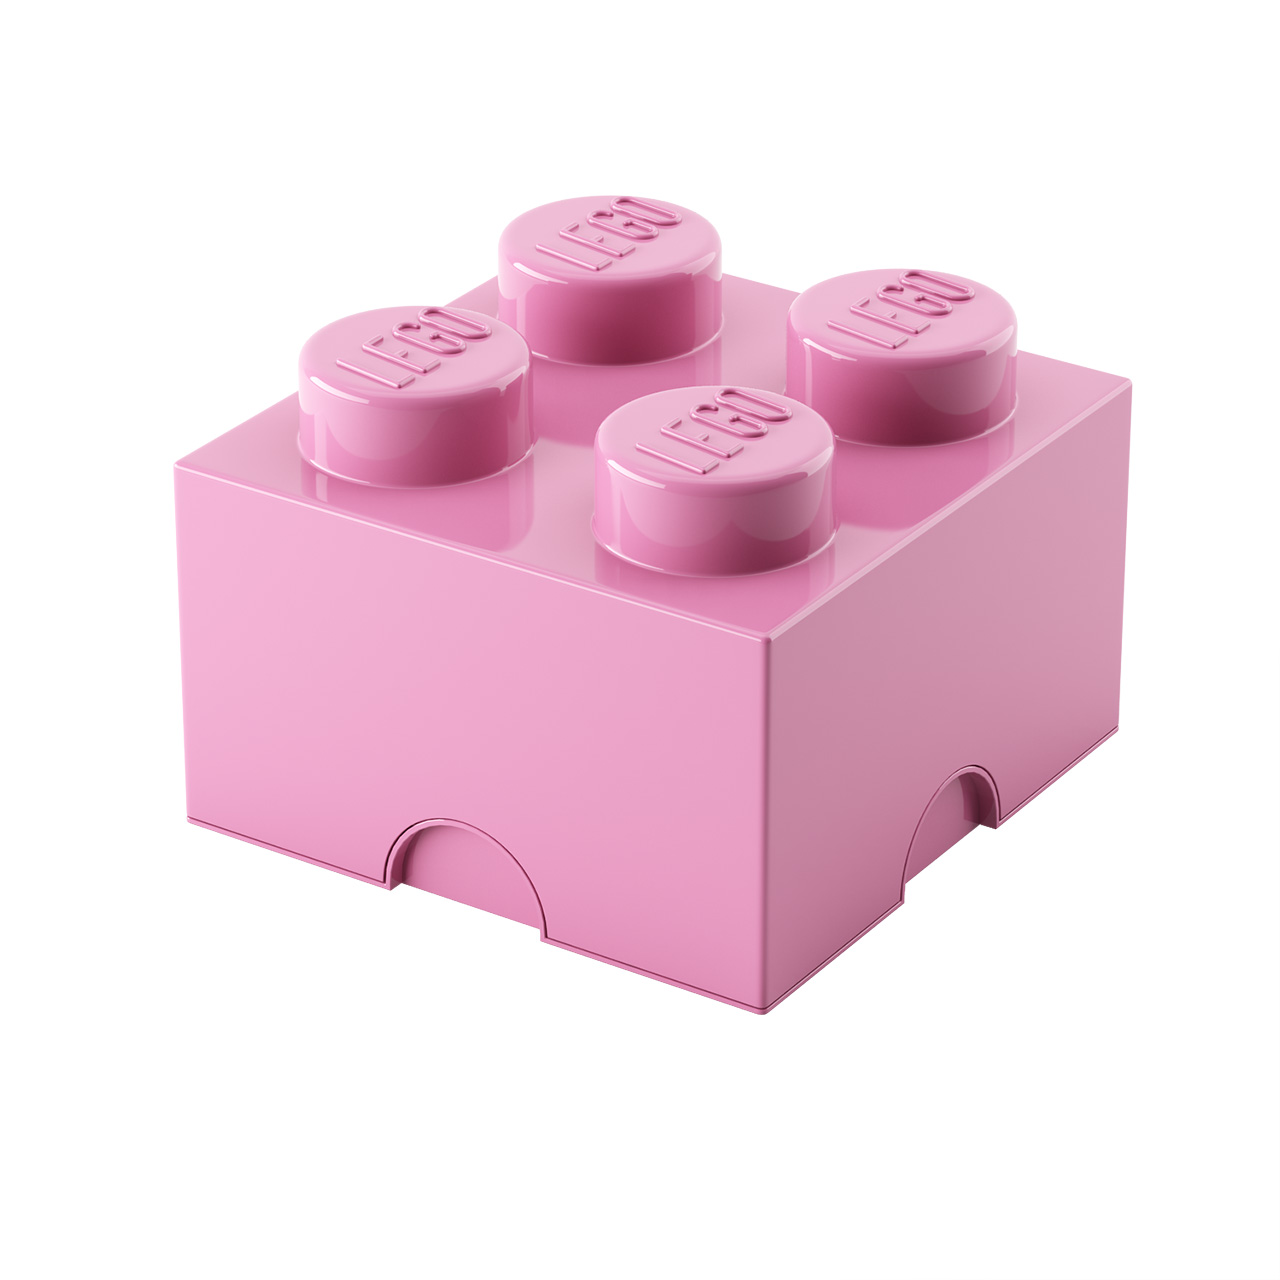 storage-brick-4-by-lego.jpg